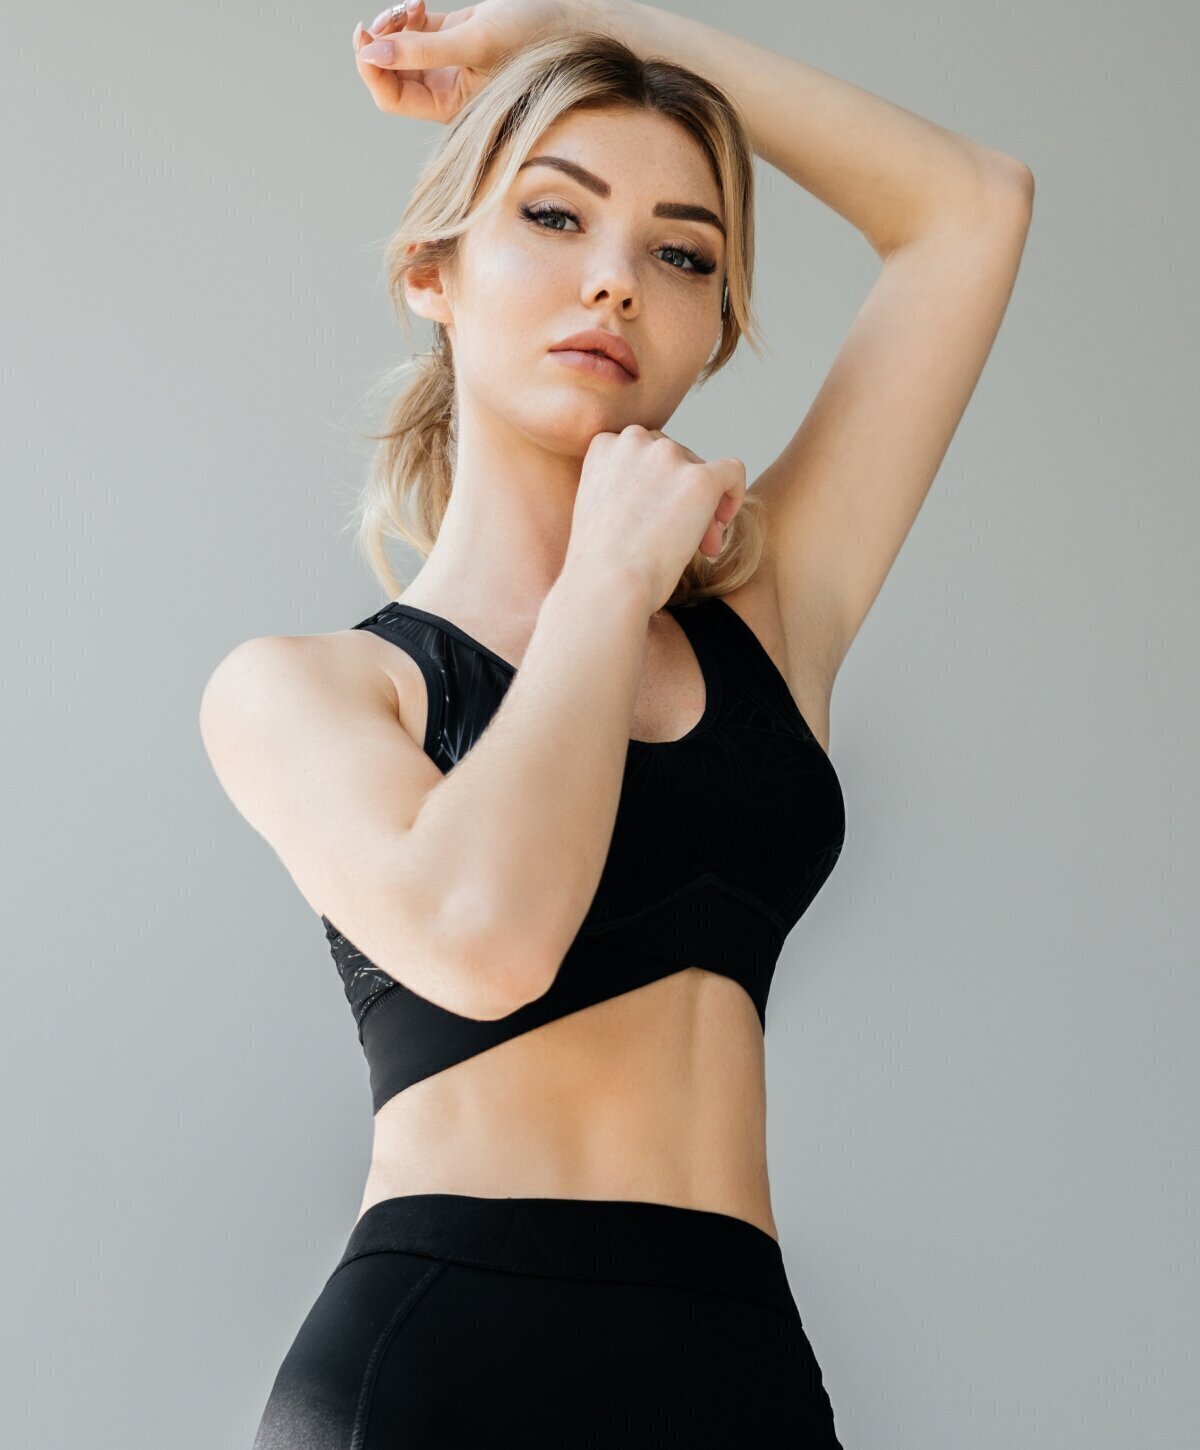 Phoenix liposuction model wearing a black top